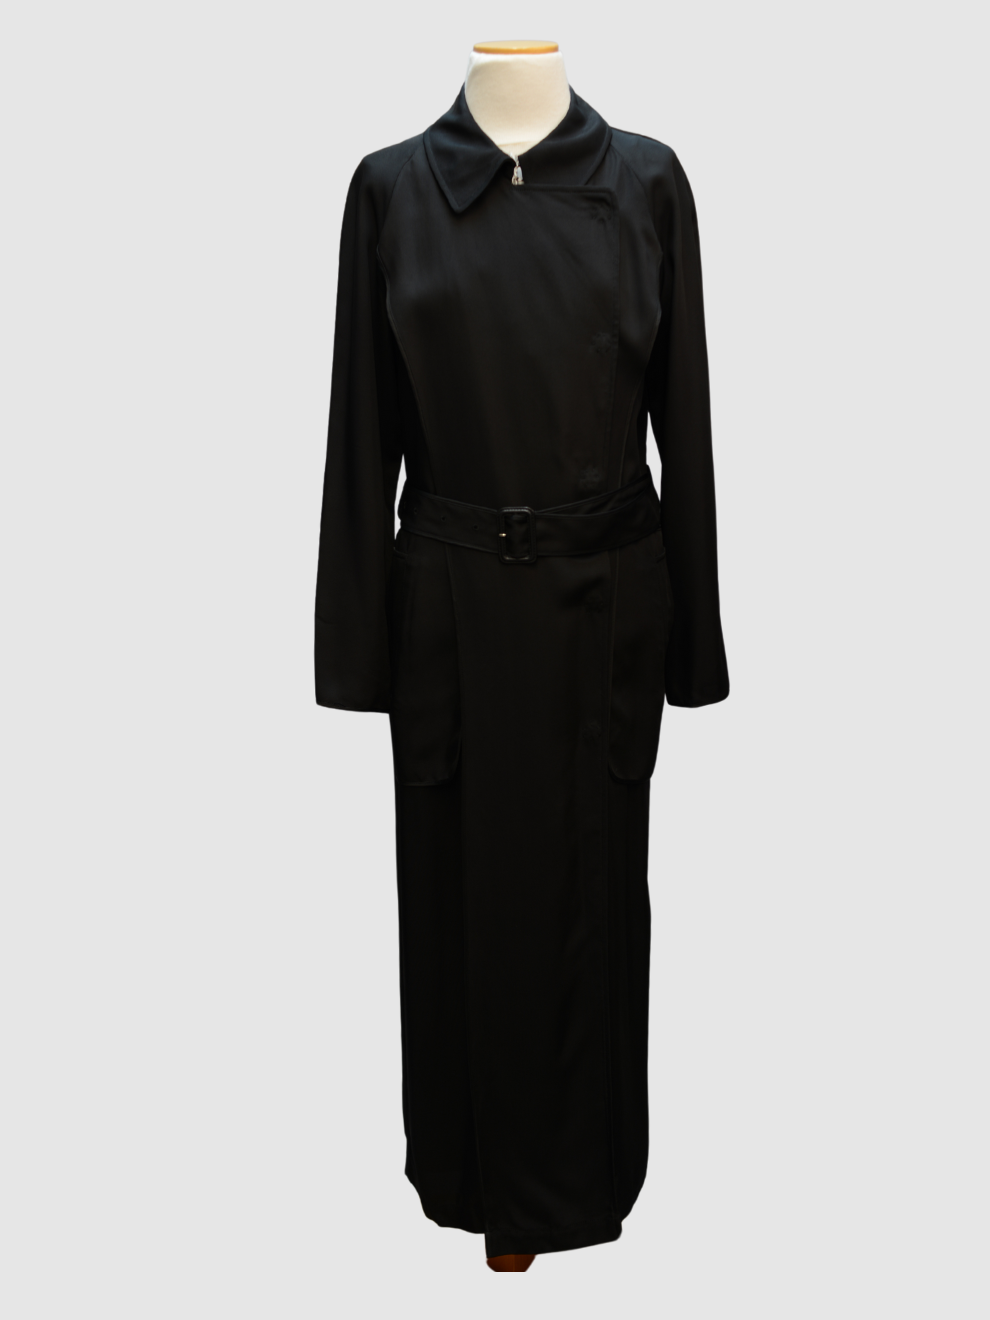 Schwarzes langes Mantel-Dress von Maison Martin Magiela